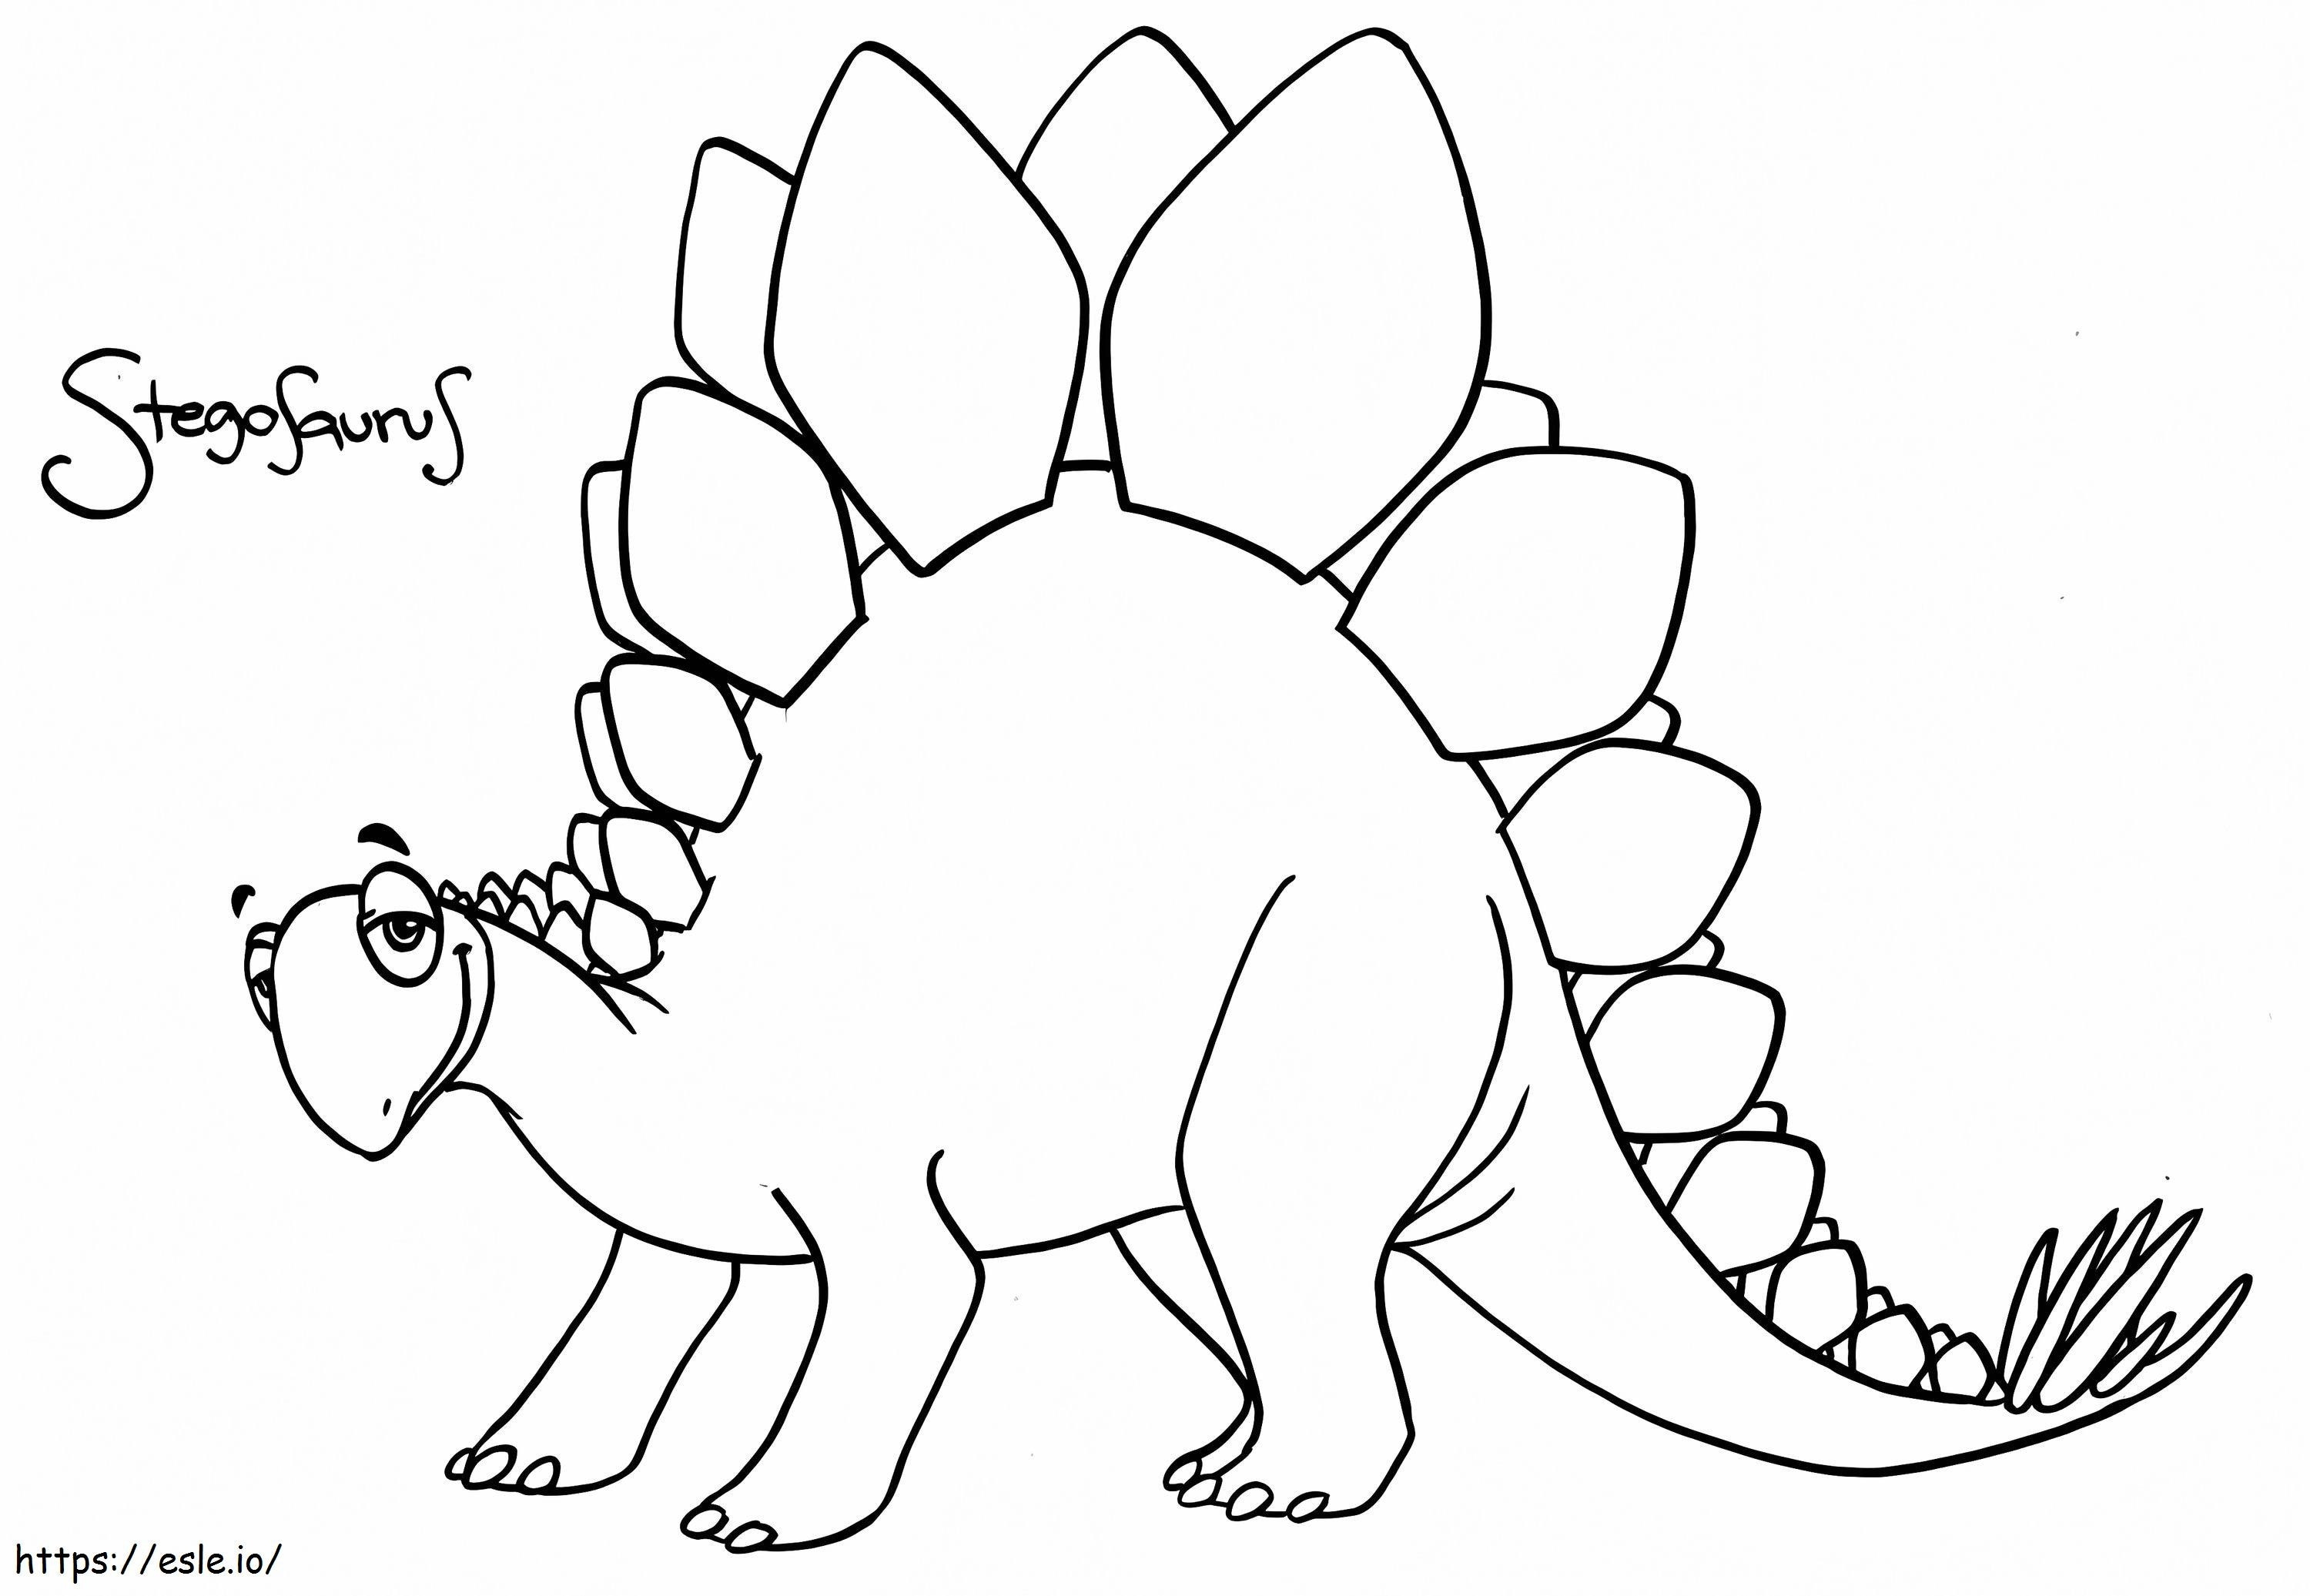 Lachende Stegosaurus kleurplaat kleurplaat